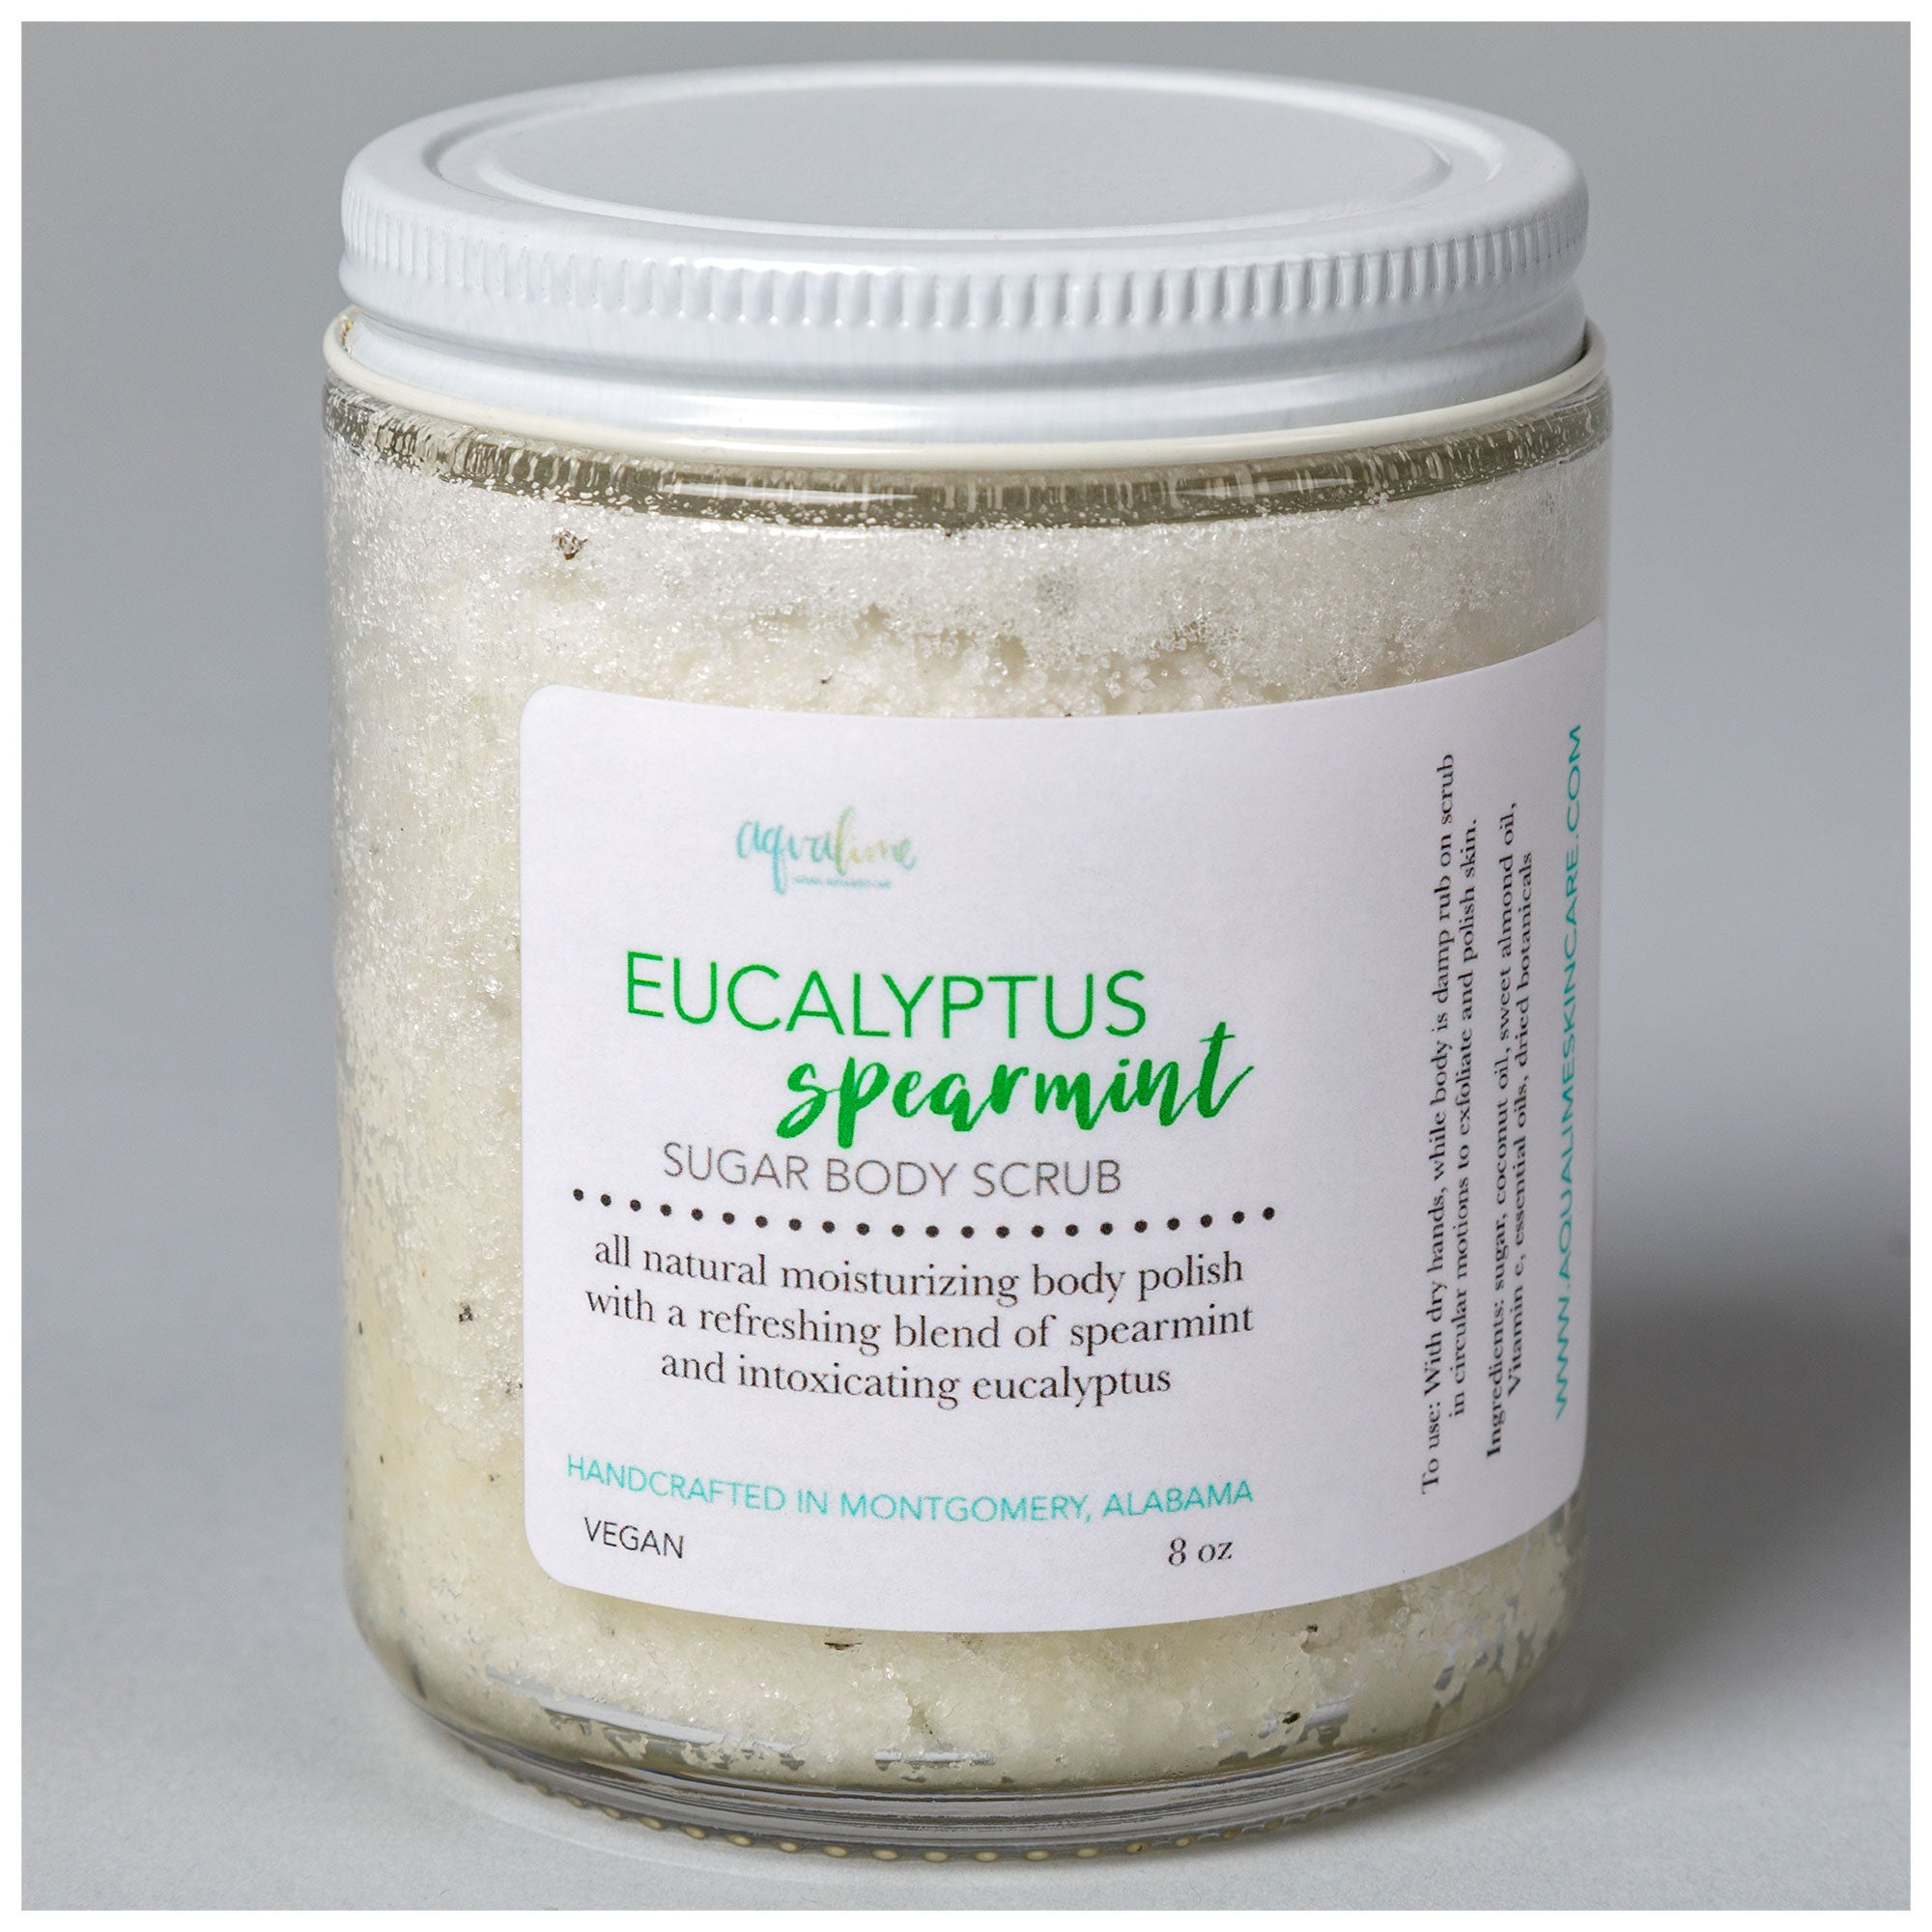 Aqualime Sugar Body Scrub - Eucalyptus Spearmint